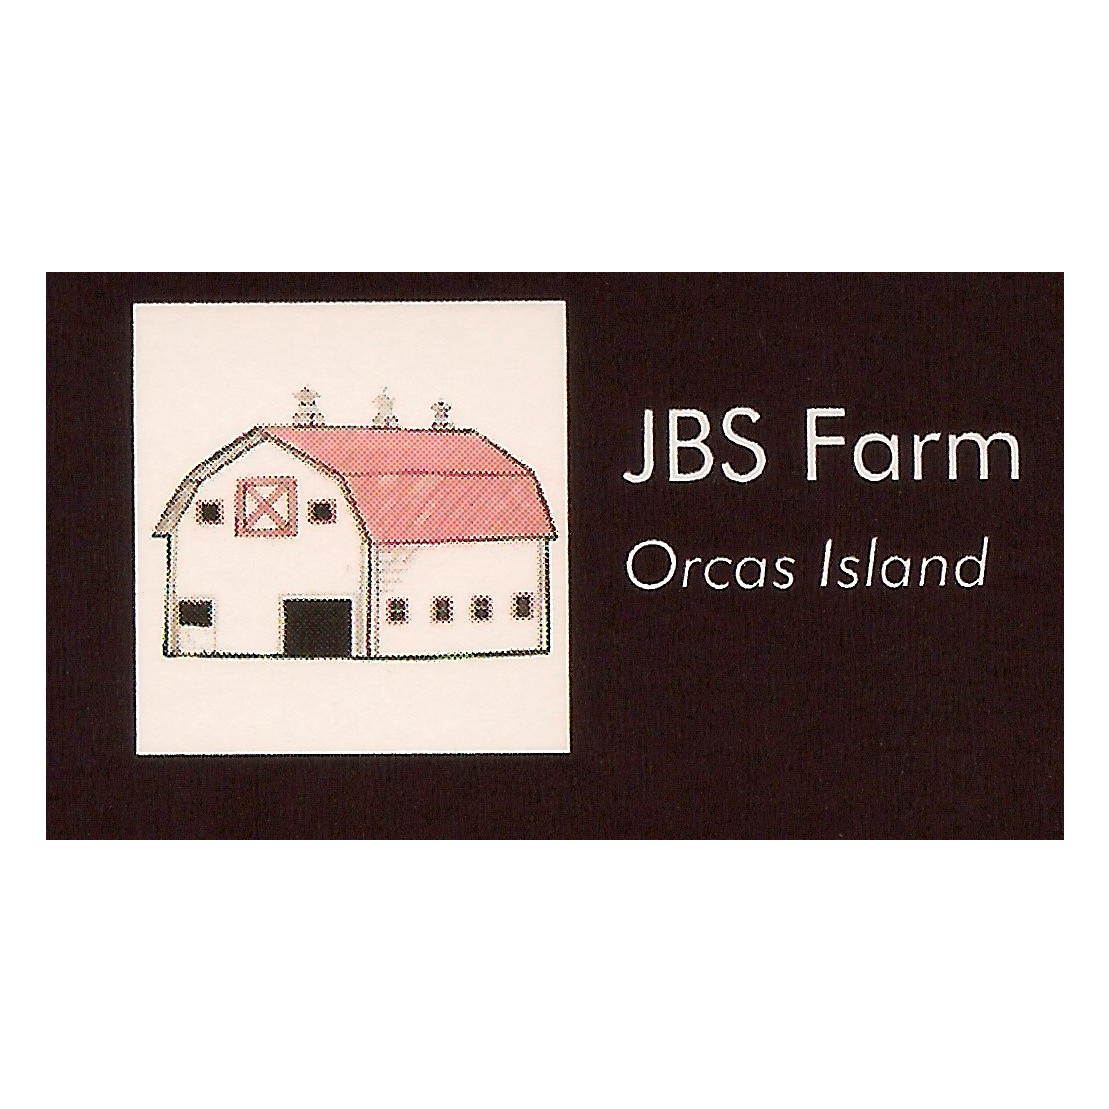 JBS Farm